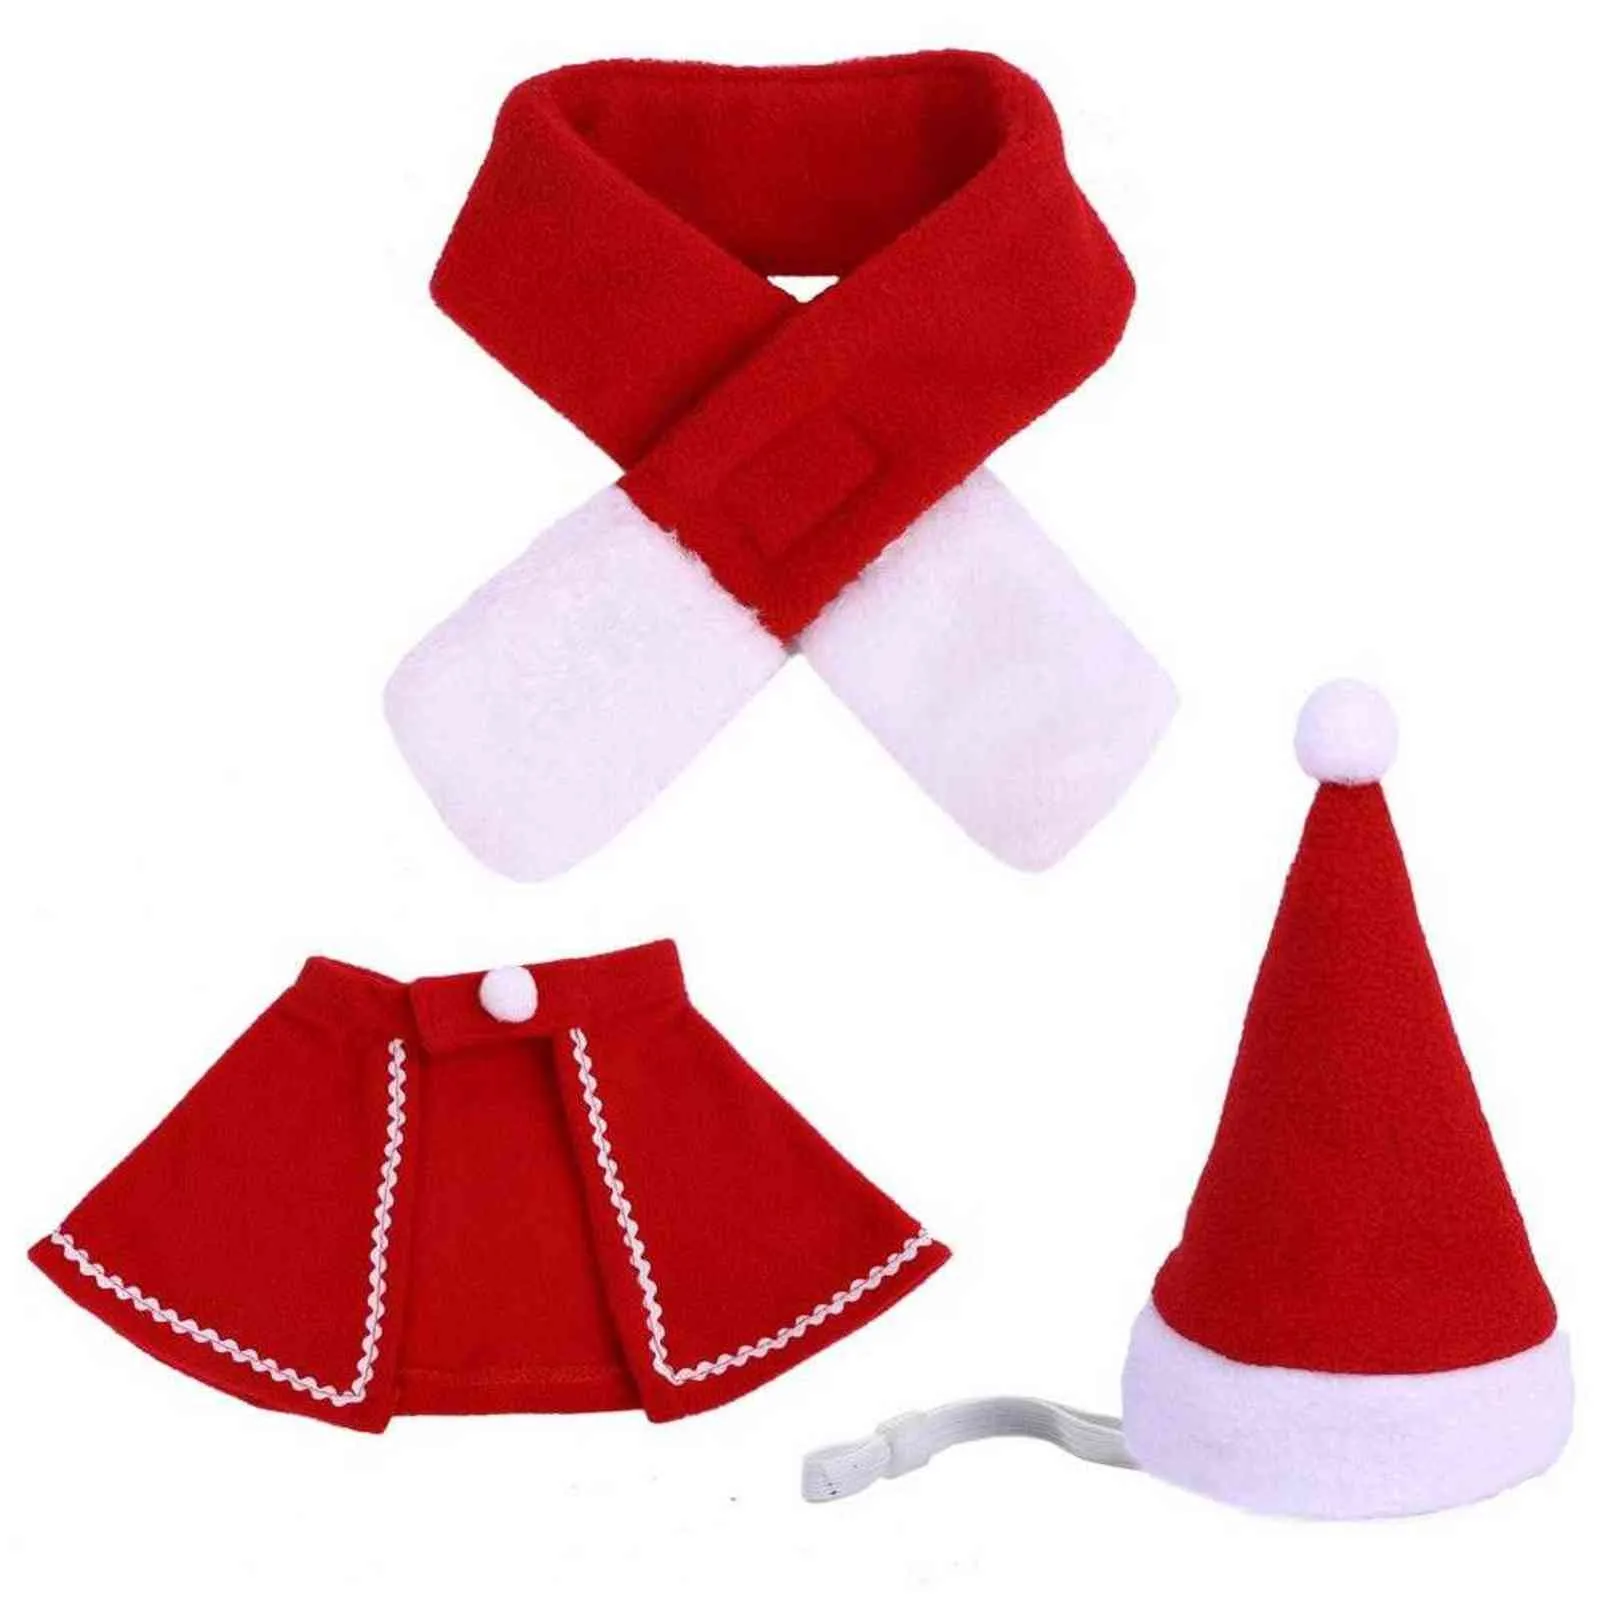 3 teile/satz Haustier Weihnachten Kostüm Nette Mäntel Schal Hut für Katze Hund Exquisite Neue Jahr Kleidung Kreative Geschenk Welpen Kätzchen